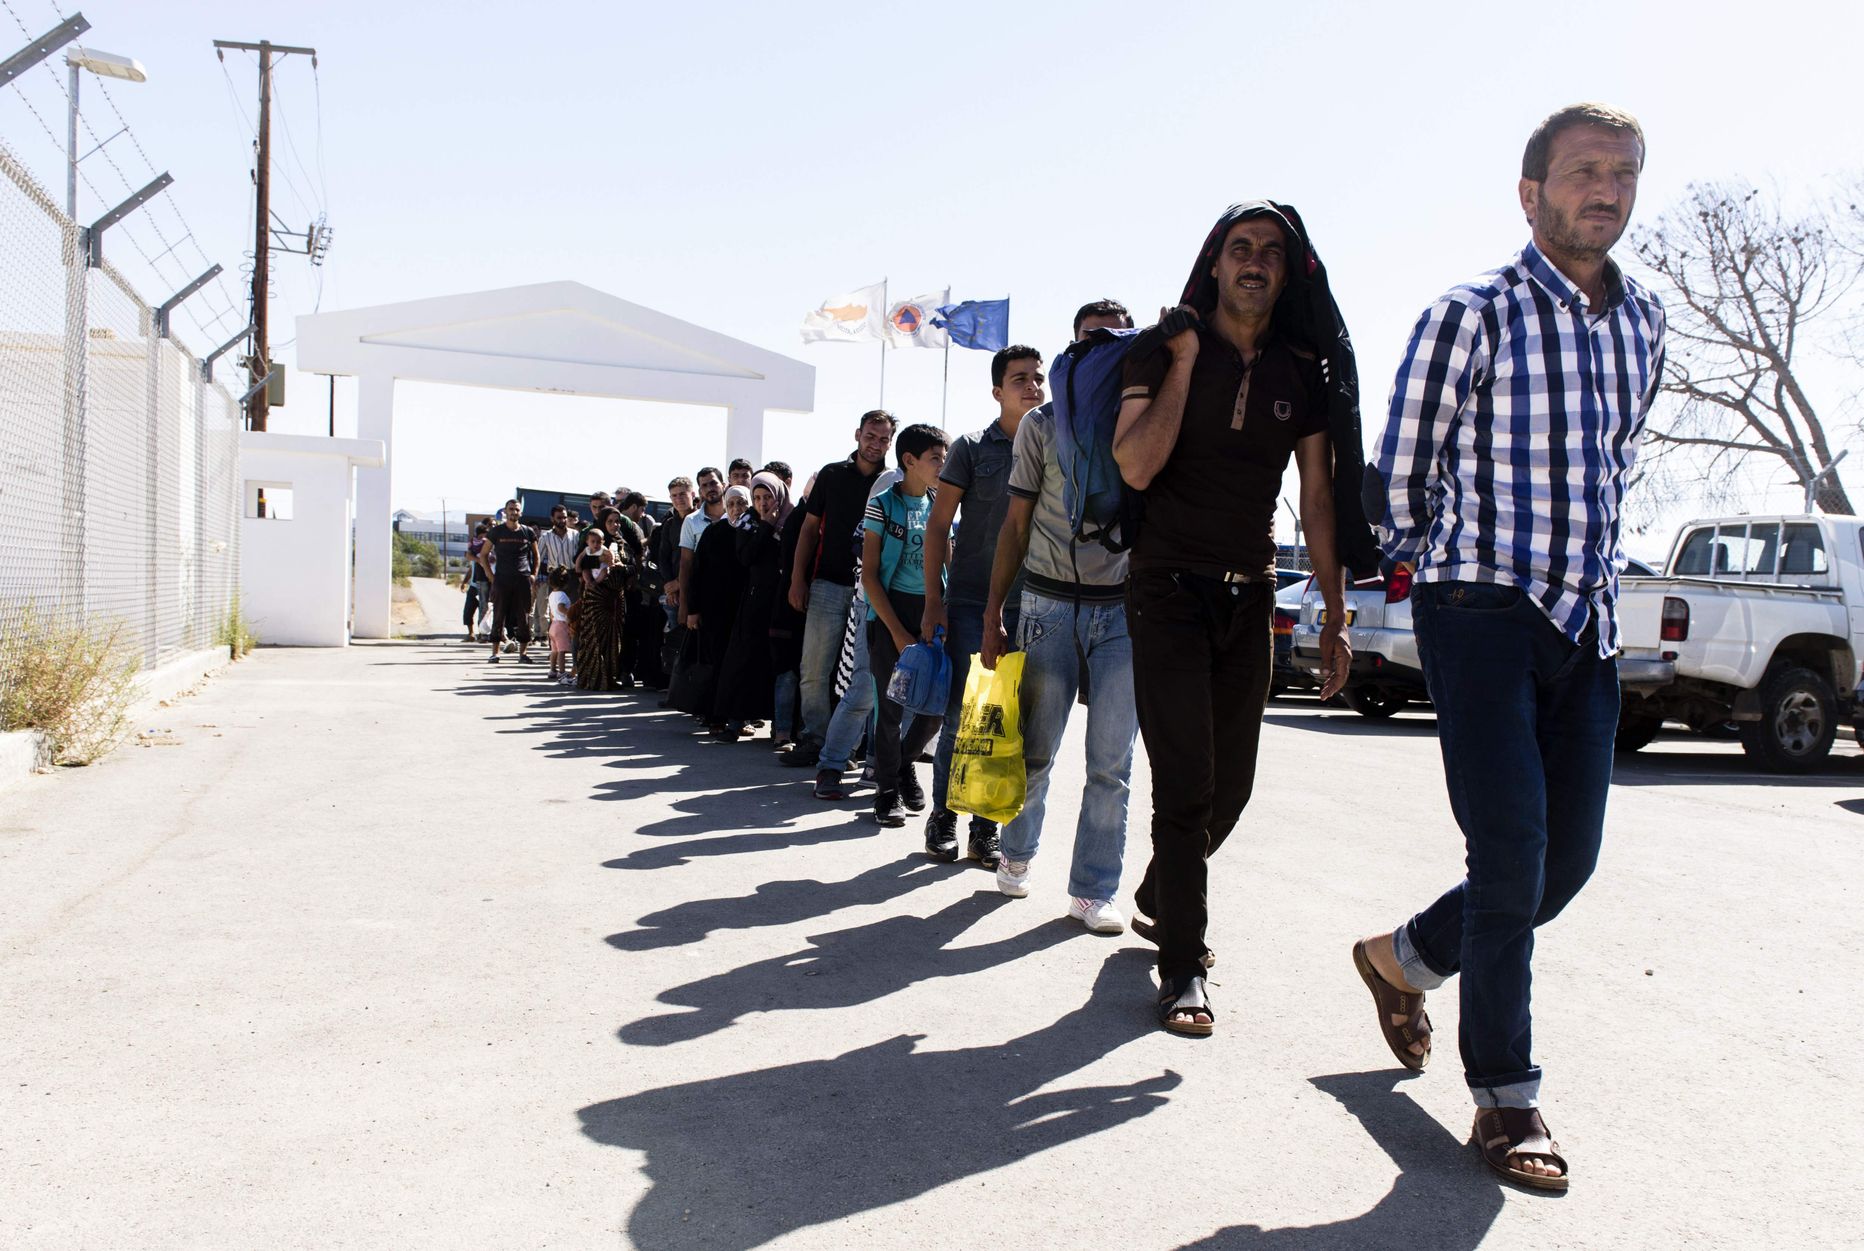 Süüria põgenikud saabumas Kokkinotrimithia põgenikelaagrisse Küprosel.